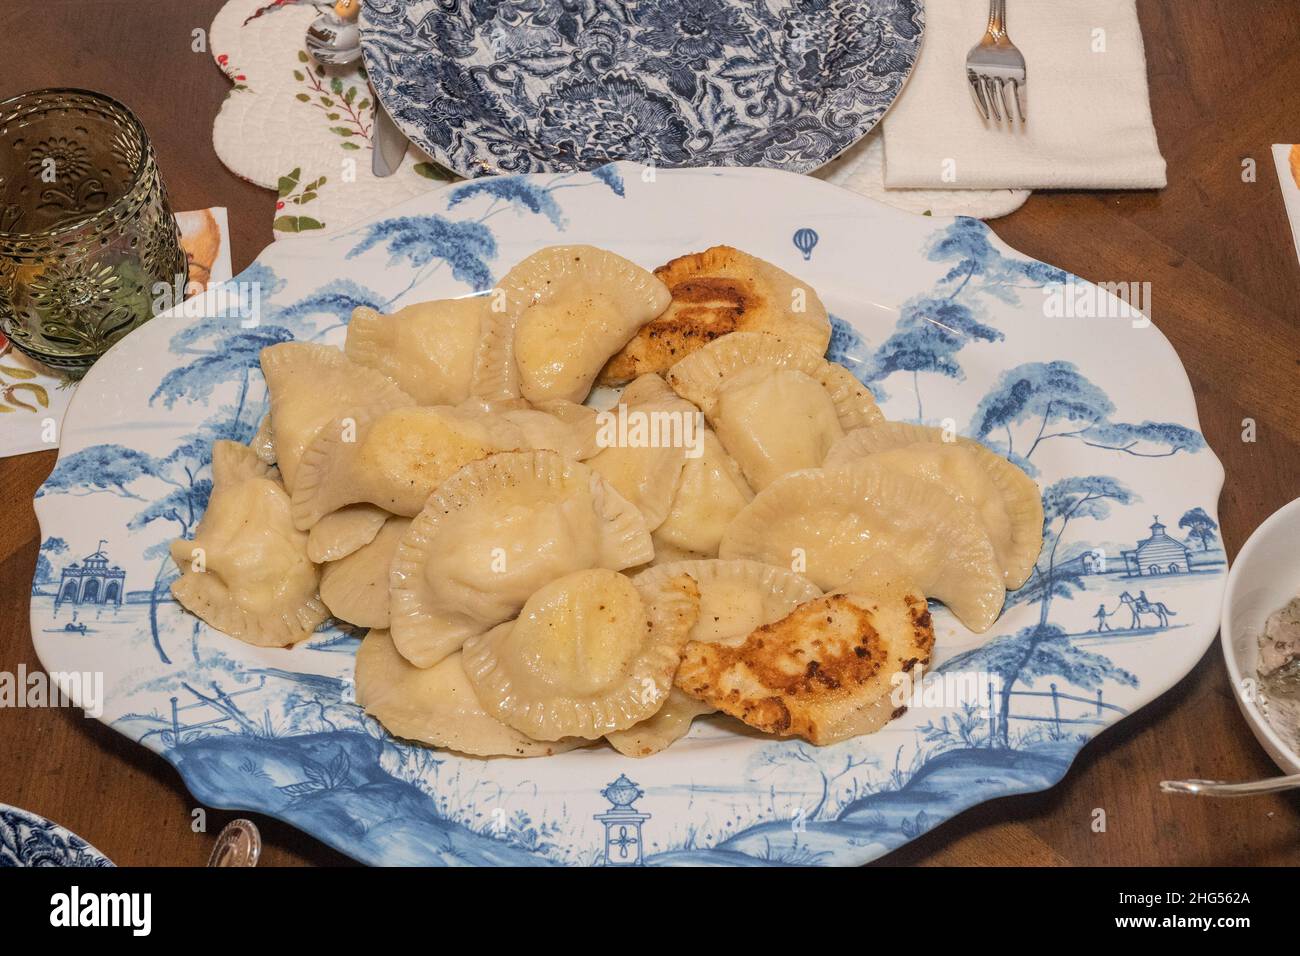 Pierogi sind Knödel aus ungesäuertem Teig, zuerst gekocht, dann gebacken oder gebraten in der Regel in Butter mit Zwiebeln &ndash; traditionell gefüllt mit Stockfoto